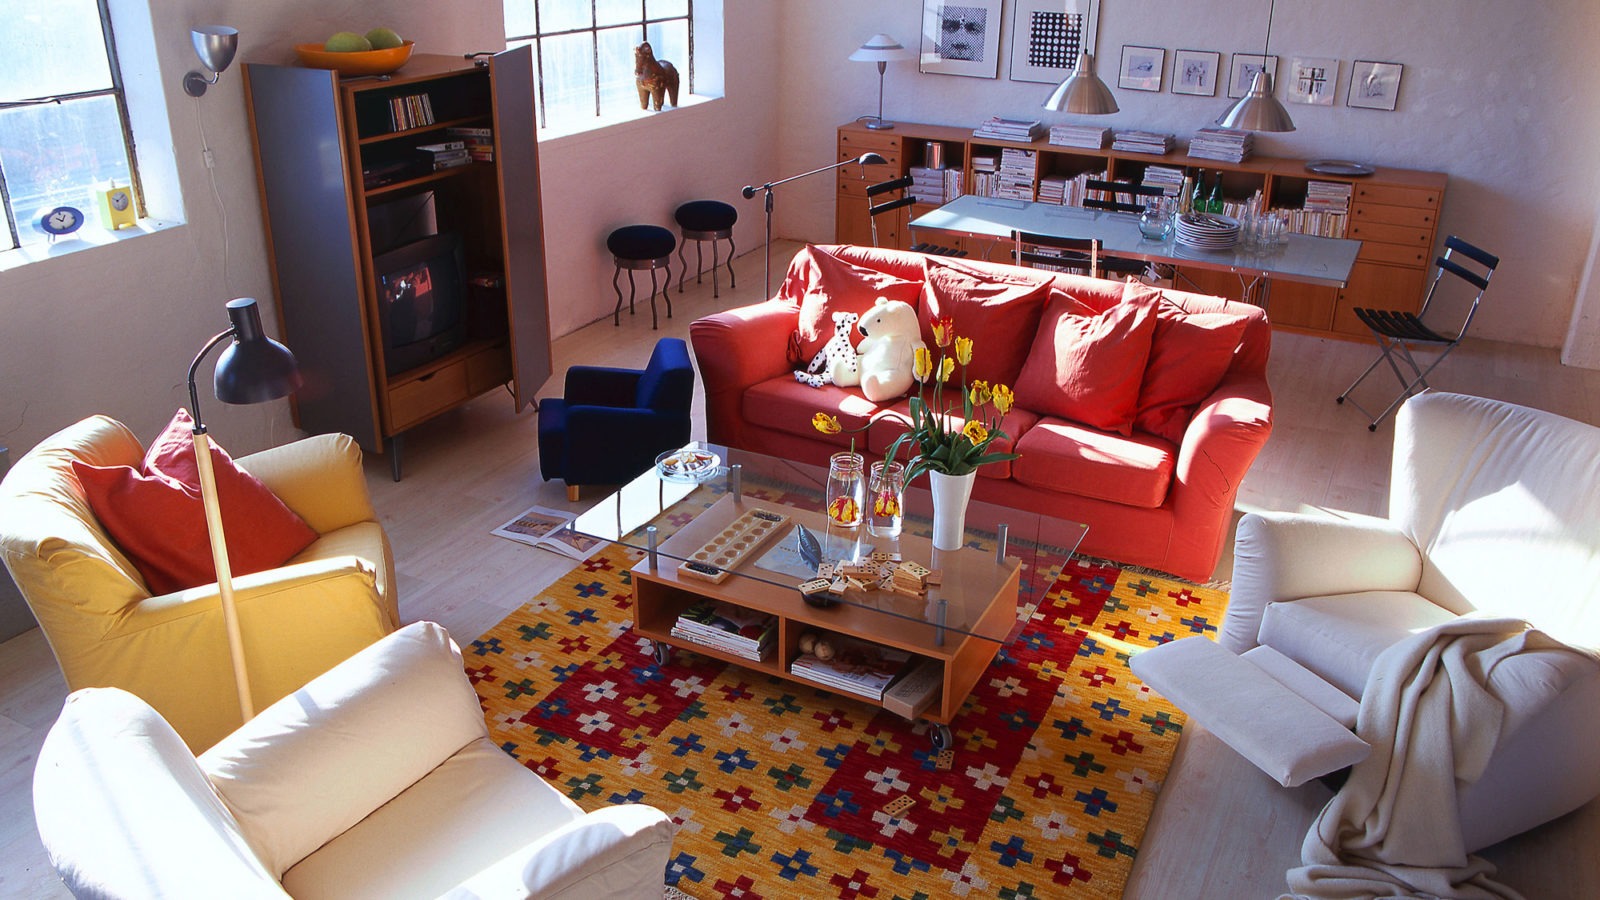 Amplio salón con sofás y sillones en varios colores alrededor de una mesa baja con almacenaje y superficie de vidrio.